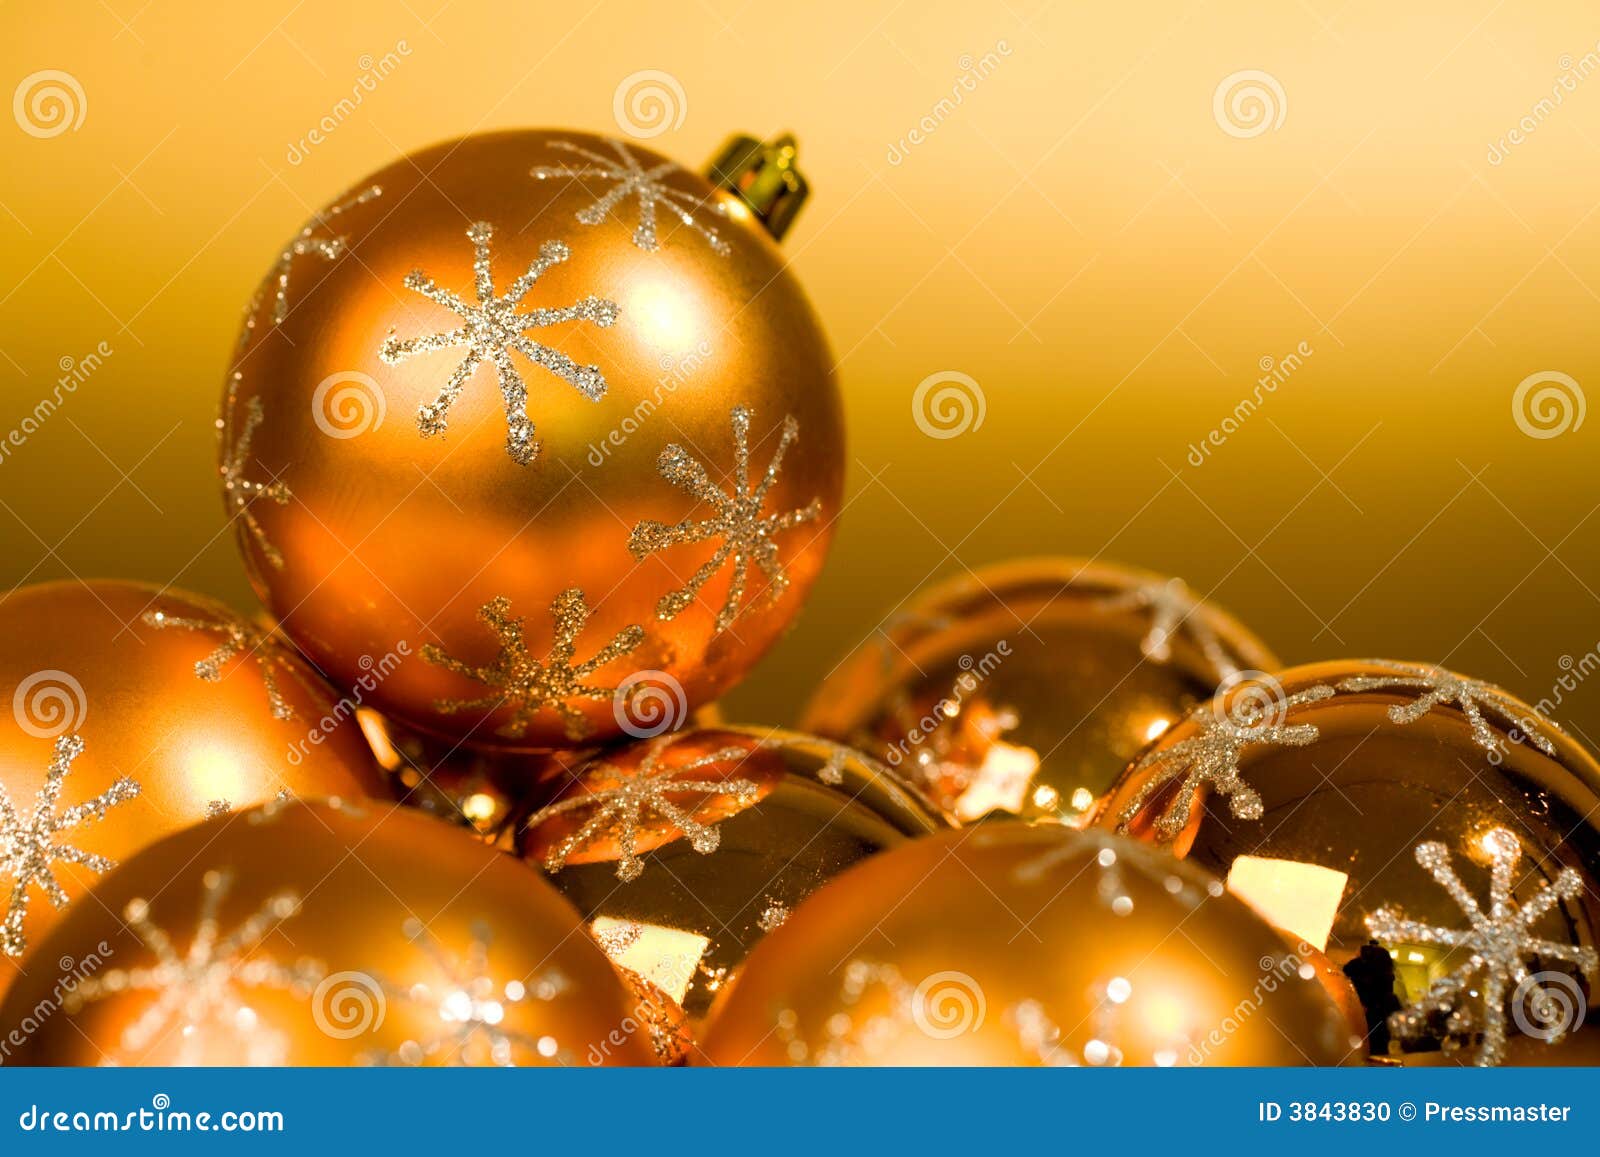 Orange balls stock photo. Image of decorative, festive - 3843830